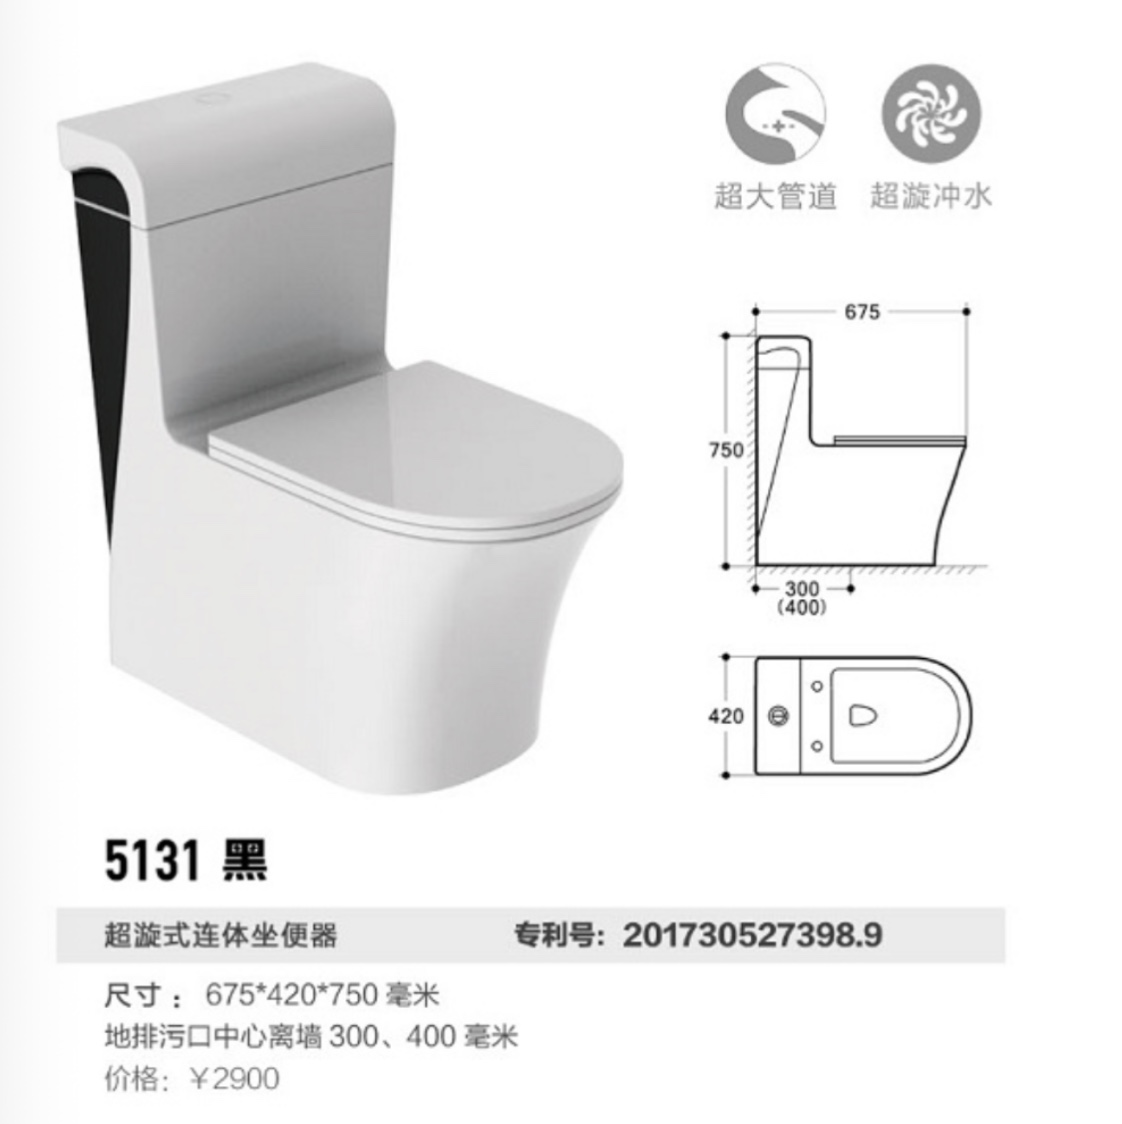 513居易卫浴原创设计超大管道超节水技术坐便器专利马桶